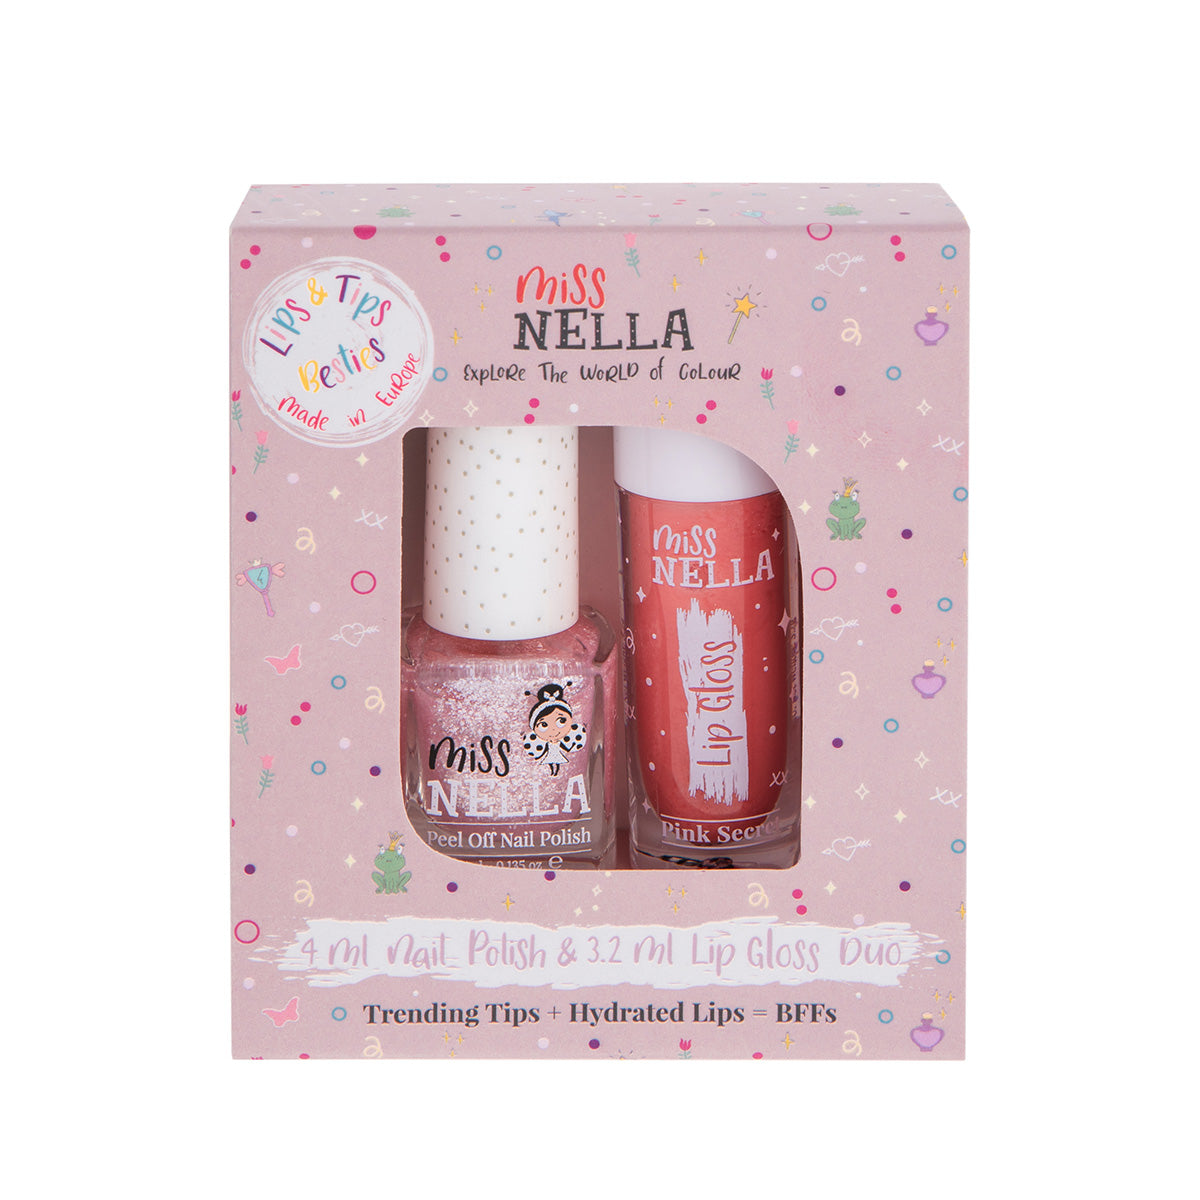 Miss Nella duo pack itsy glitsy hippo nagellak en lipgloss pink secret is een echte musthave voor jonge fashionista's. Peel off en vrij van chemicaliën. Laat jouw kindje stralen met kleurrijke nagels en mooie lippen. VanZus